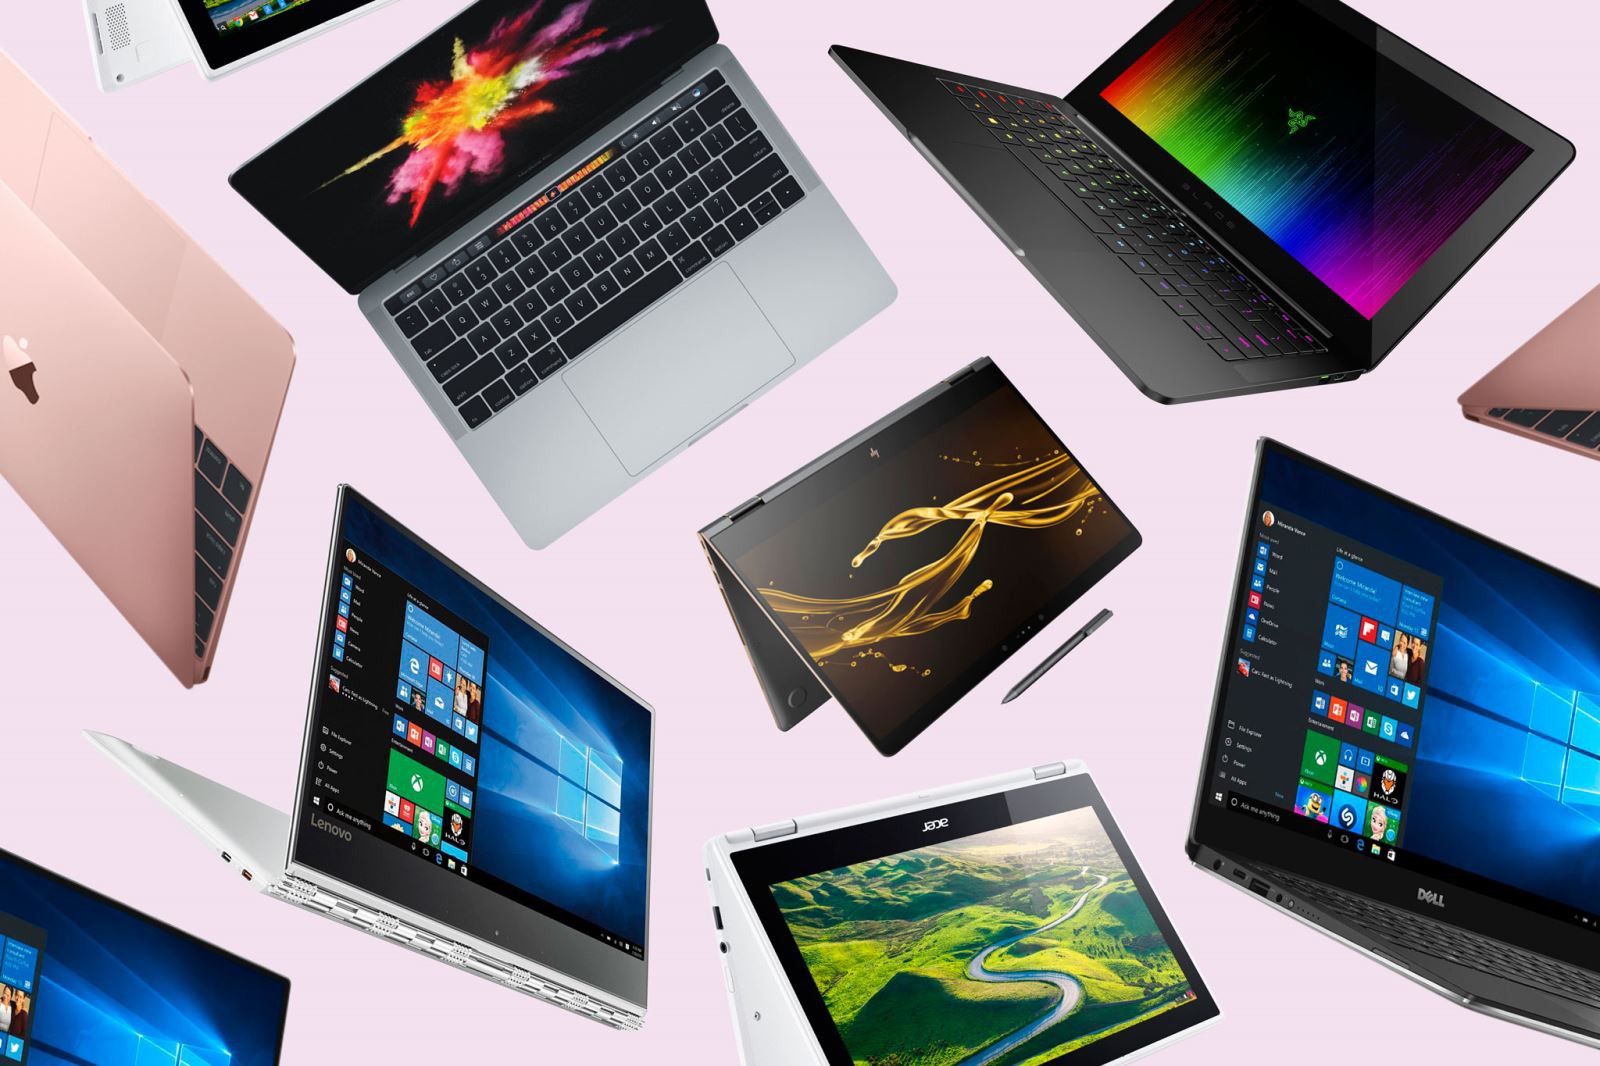 Bảng xếp hạng các thương hiệu laptop trong năm 2020 - Fptshop.com.vn